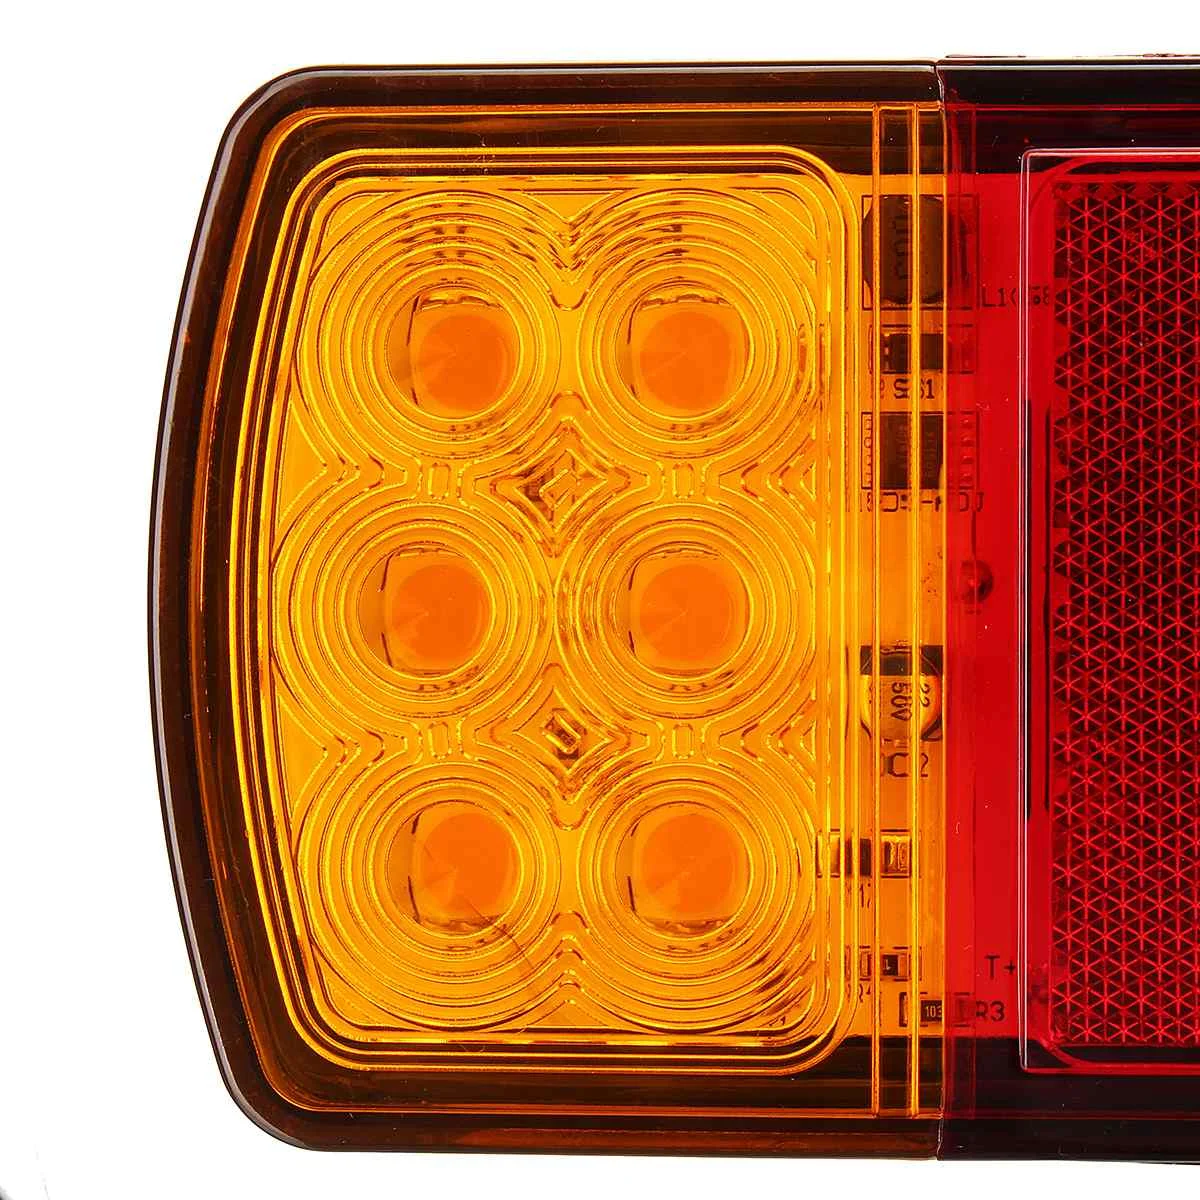 2x12 V 24V автомобиль грузовик светодиодный задний стоп-сигнал светильник цвета-красный, желтый, Предупреждение сигнальные лампы Водонепроницаемый для прицепов, кемперов ATV